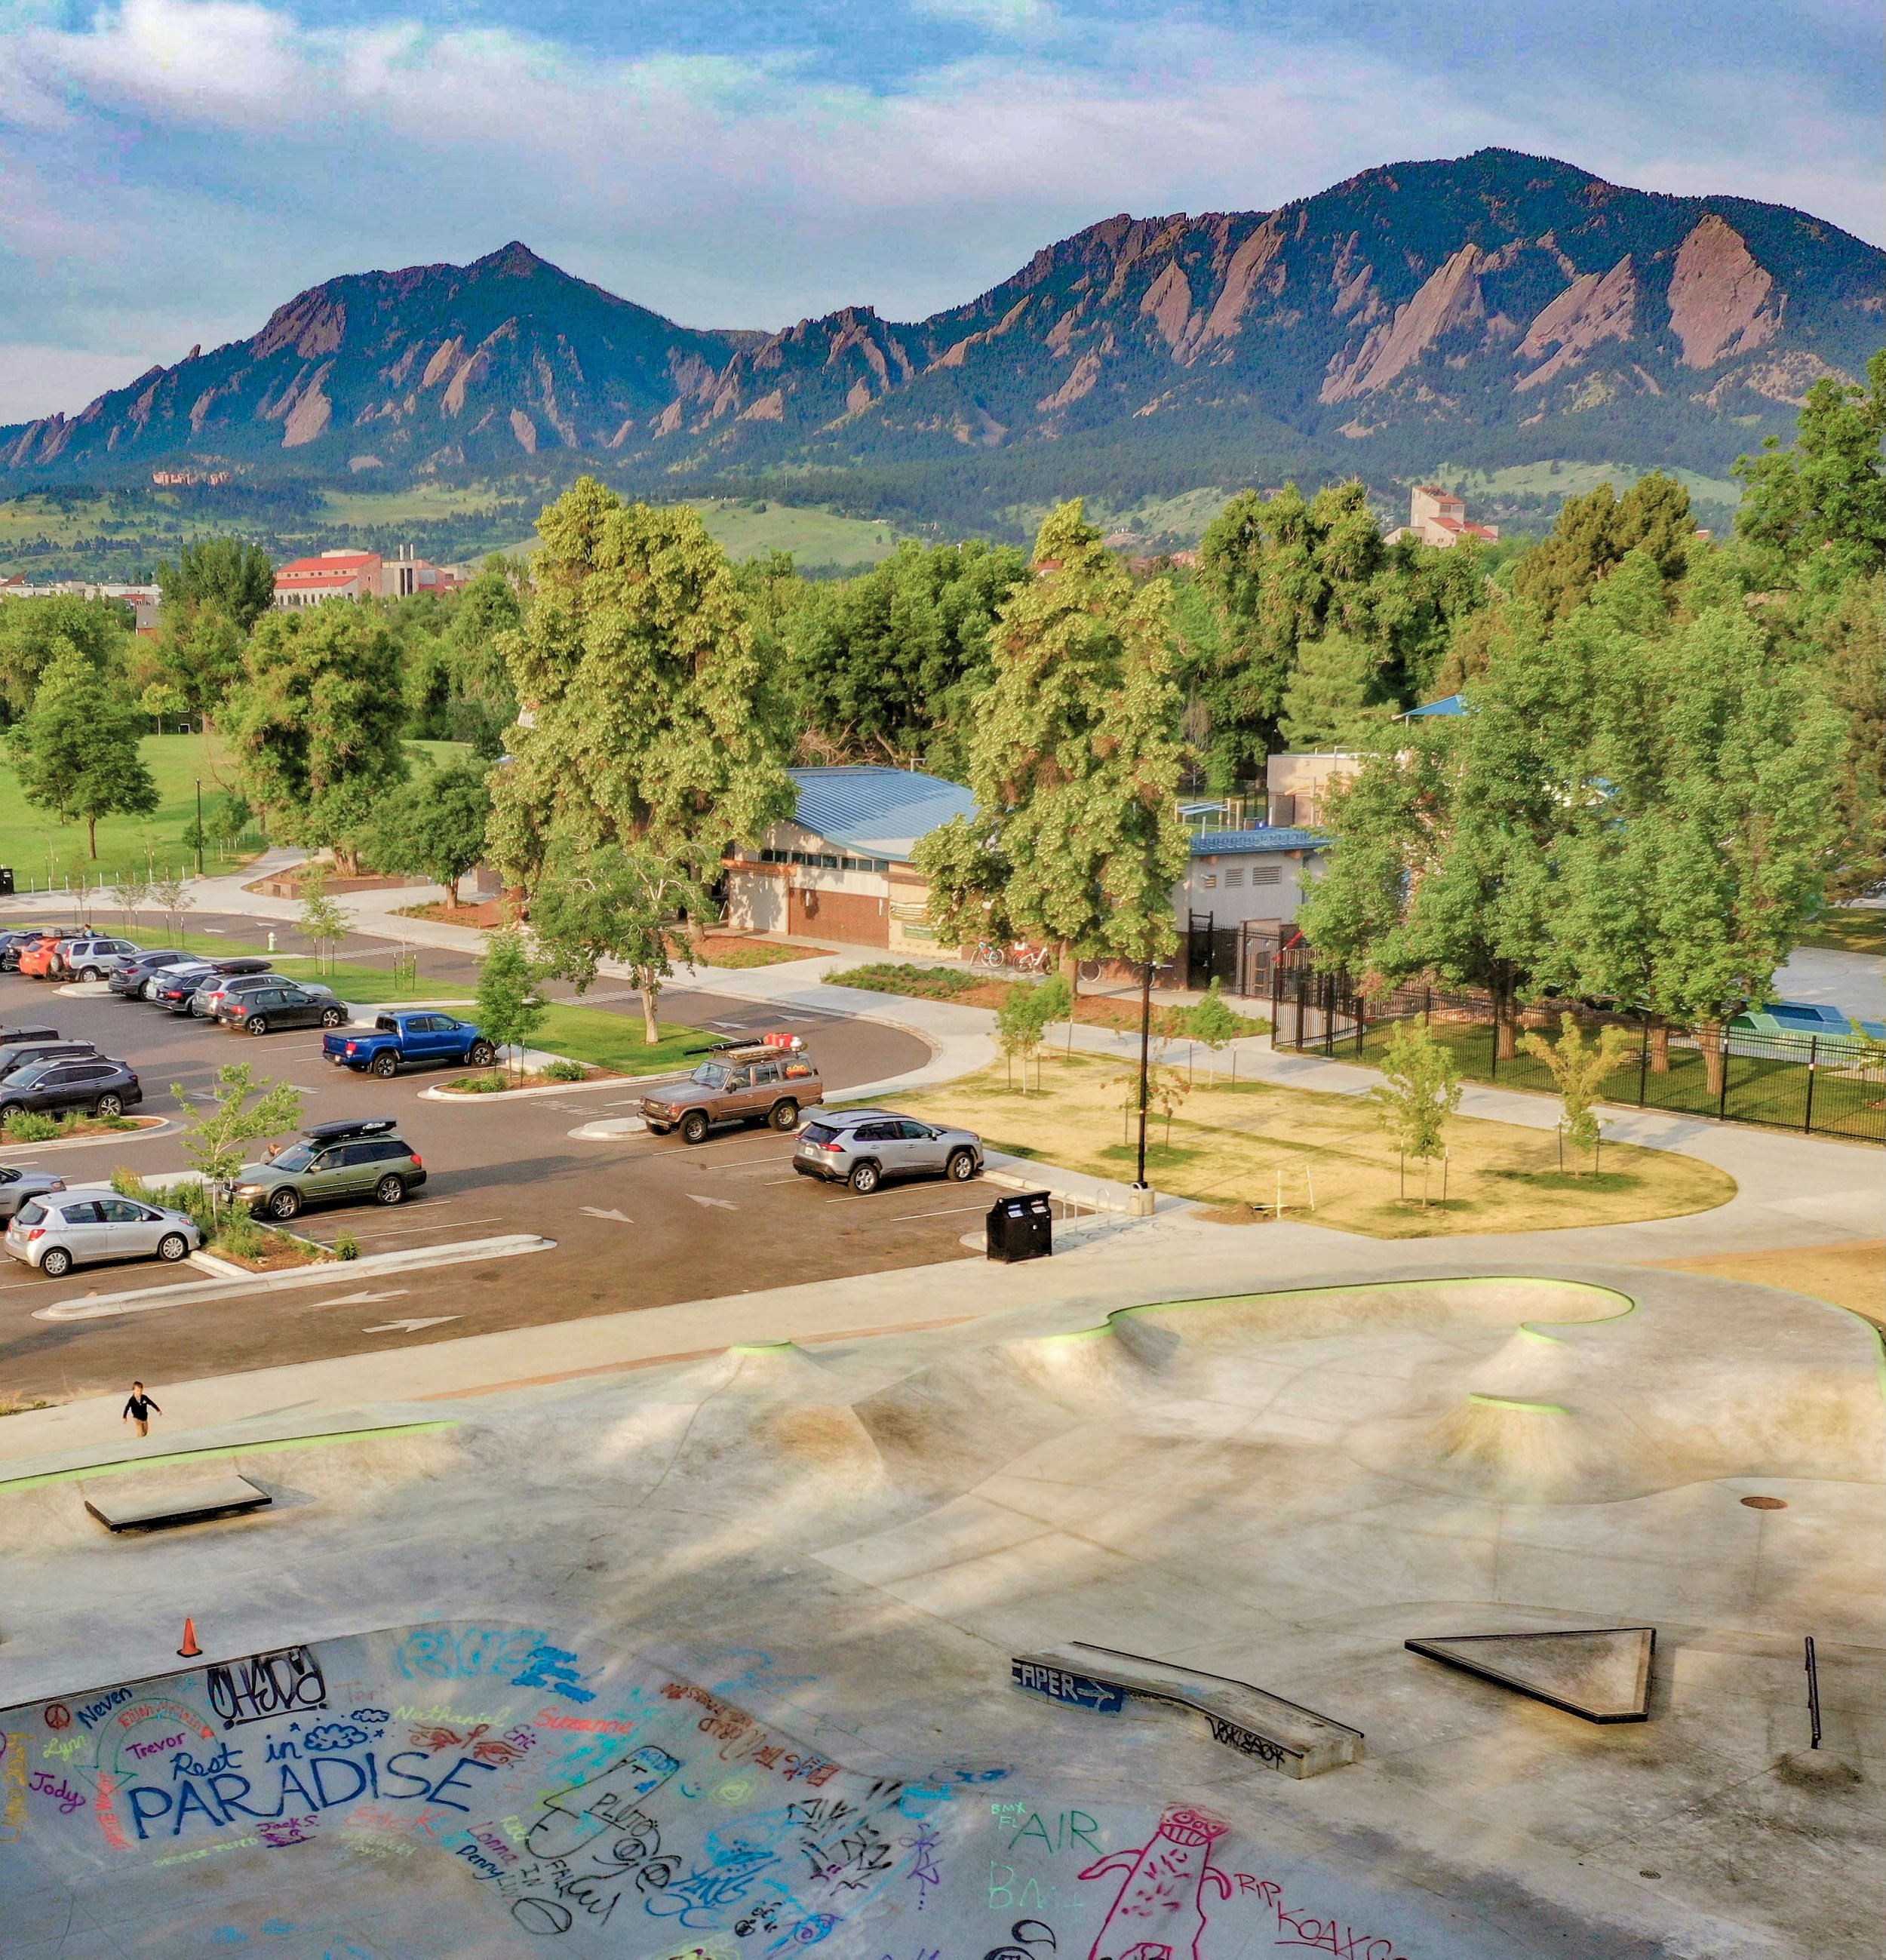 🌲 addition to the old Boulder, Colorado skatepark 😀